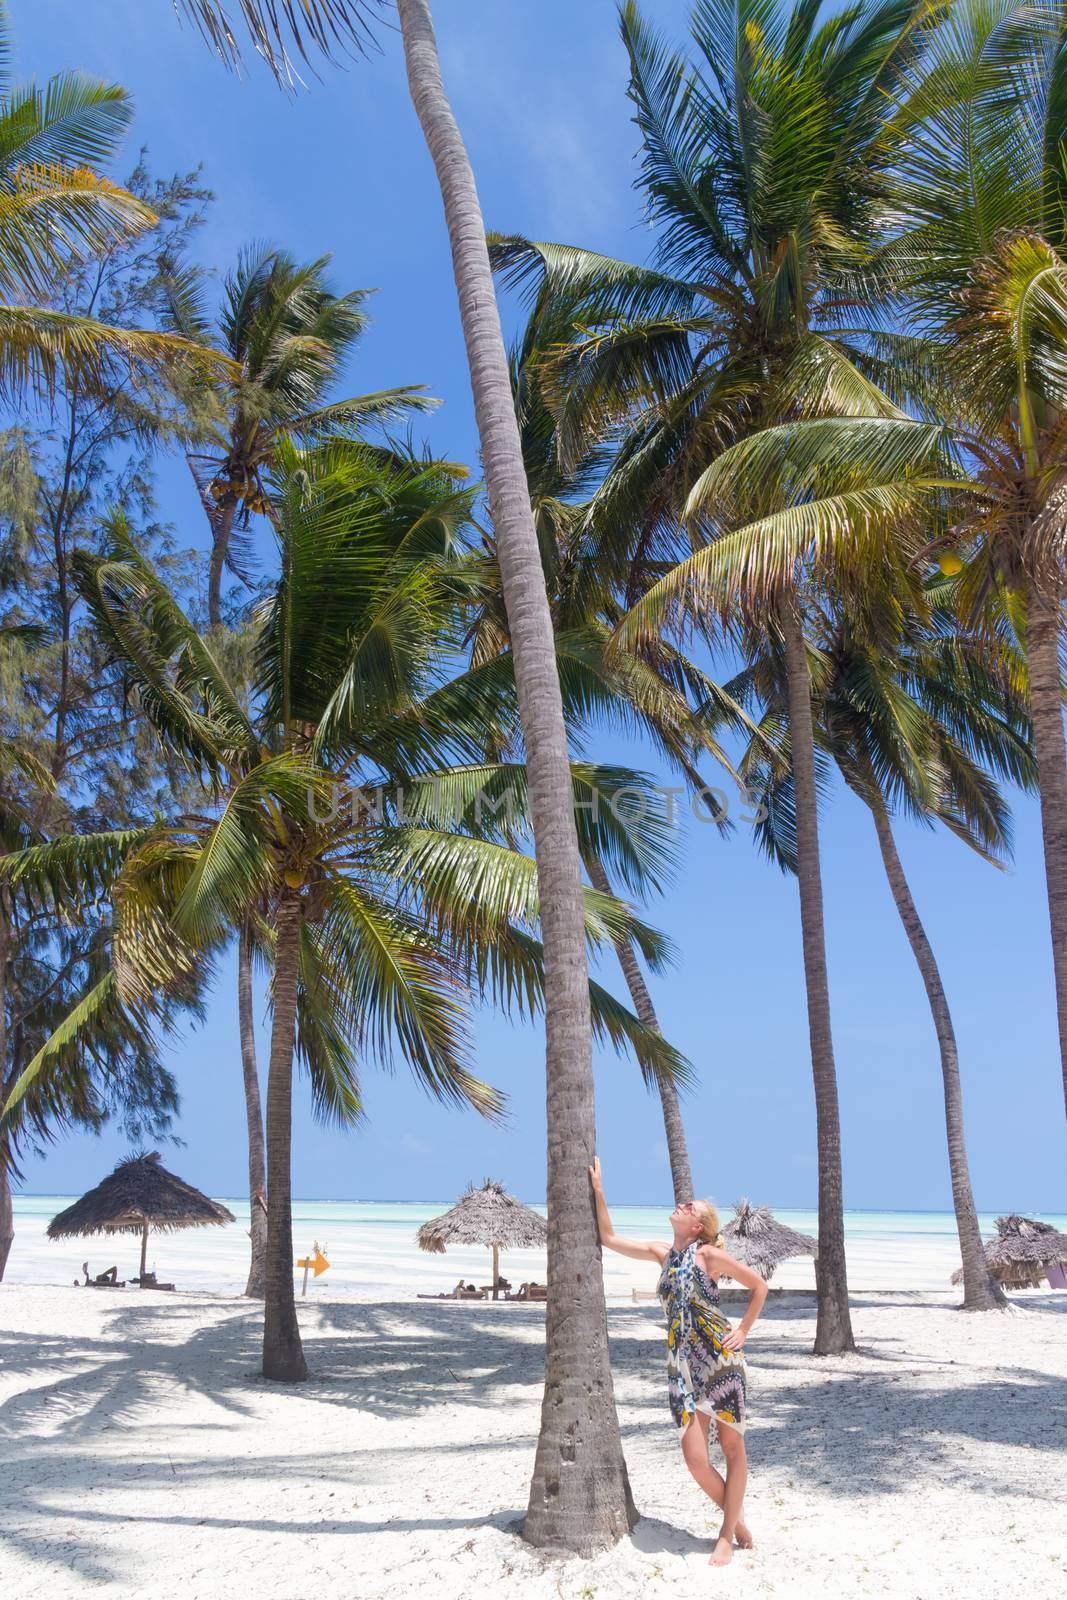 Perfect white sandy beach with palm trees, Paje, Zanzibar, Tanzania by kasto